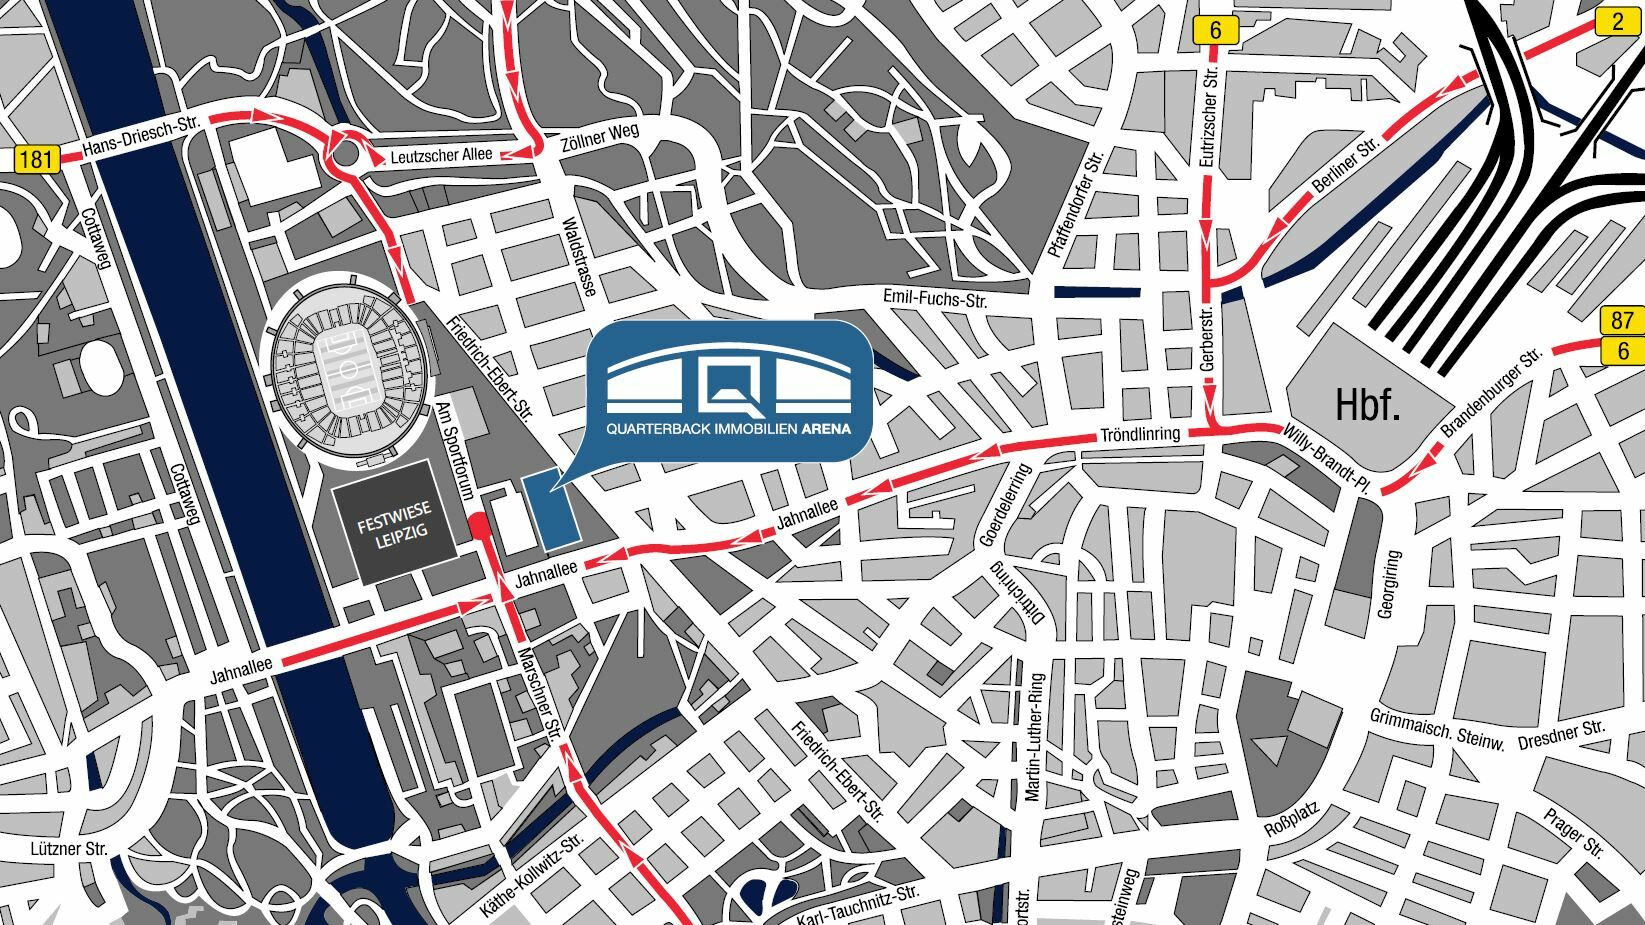 Stadtplan von Leipzig mit der QUARTERBACK Immobilien ARENA.